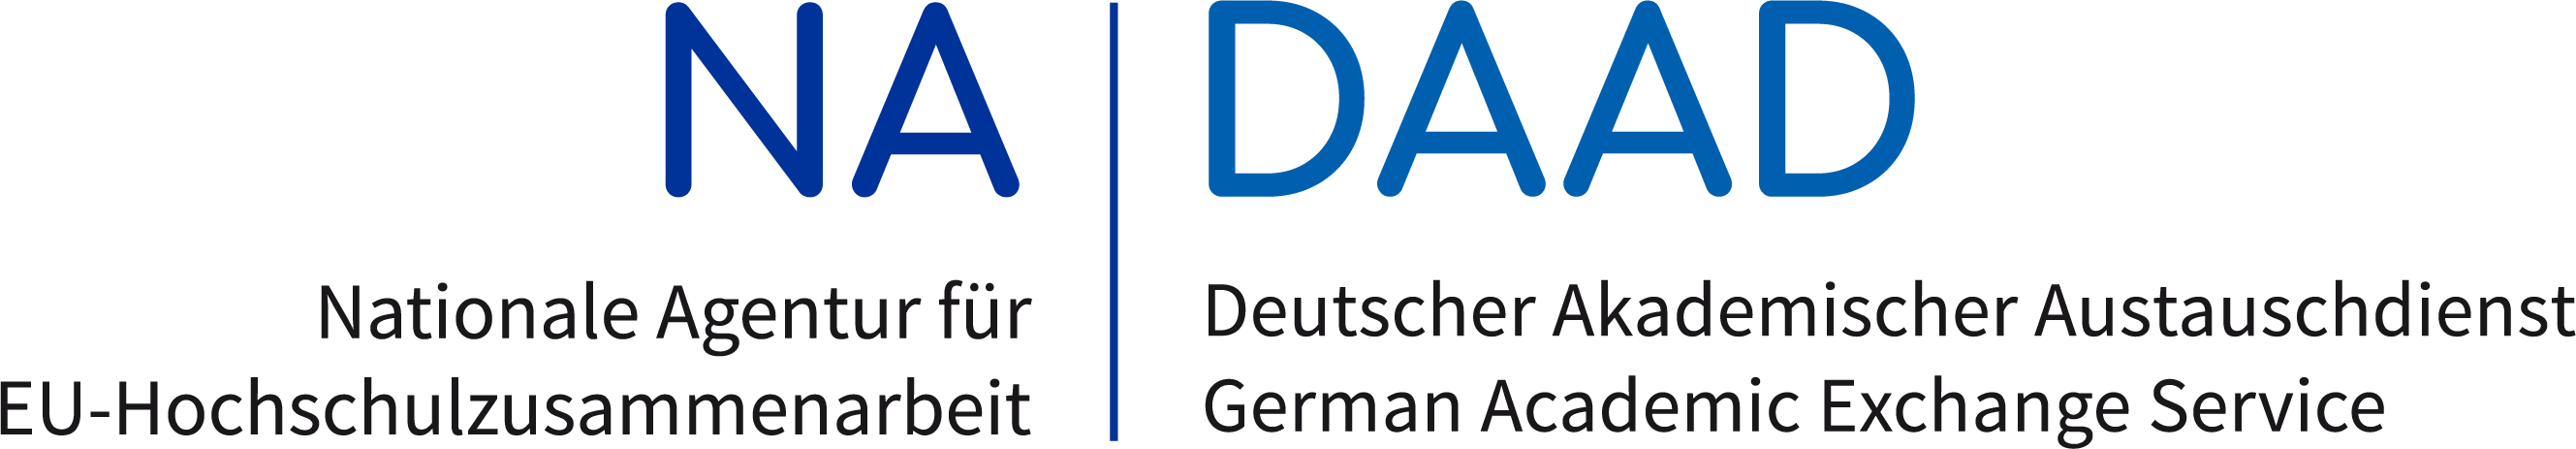 Nationale Agentur für Erasmus+ Hochschulzusammenarbeit im Deutschen Akademischen Austauschdienst logo